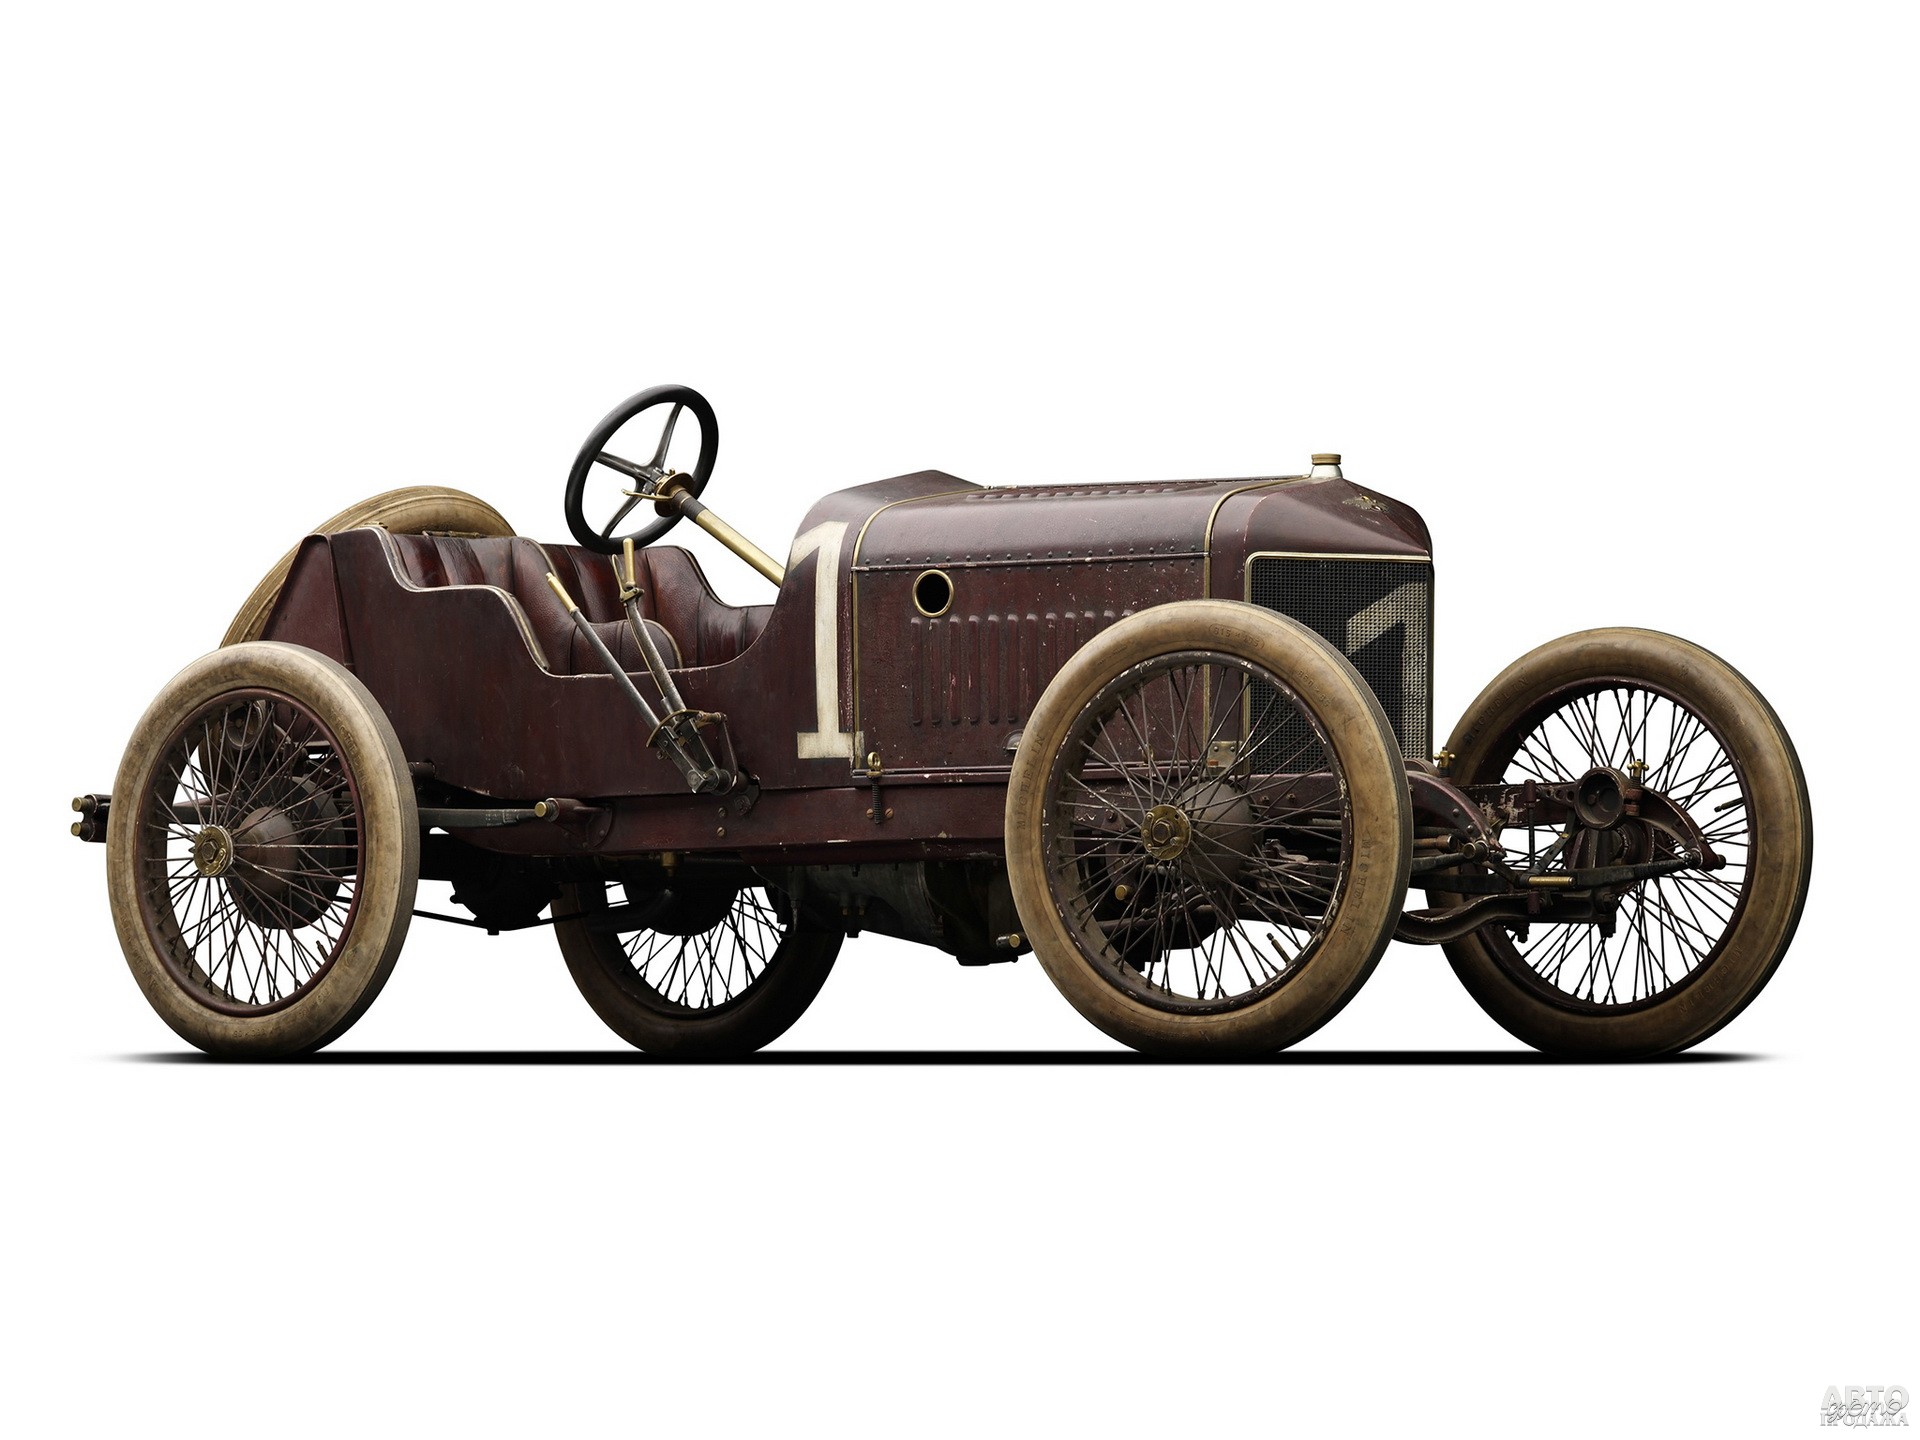 Первый Hispano-Suiza Alfonso XIII – победитель кубка Каталонии 1910 года